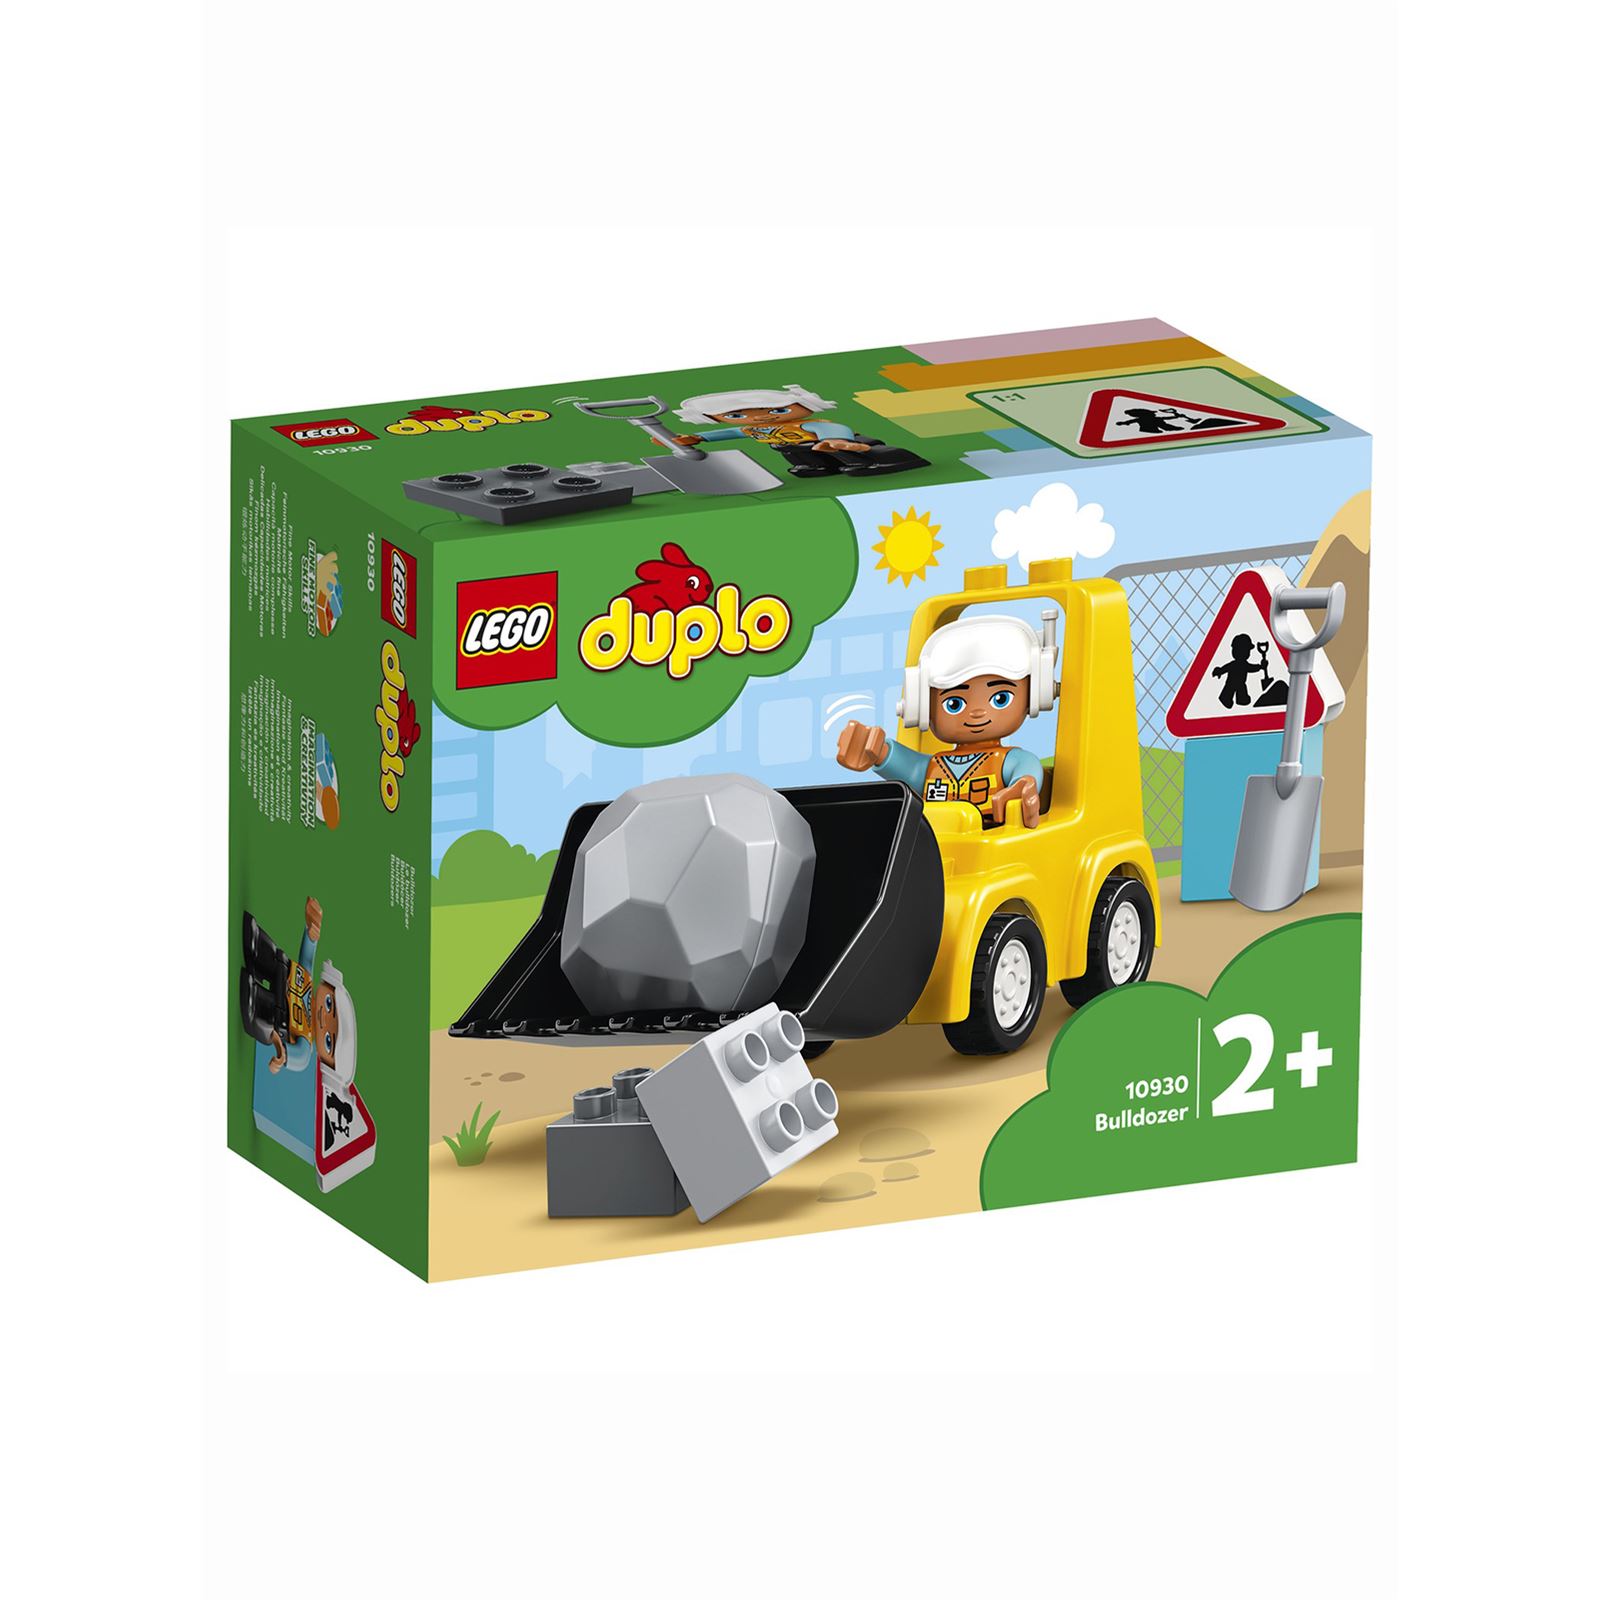 Lego Duplo İnşaat Buldozeri